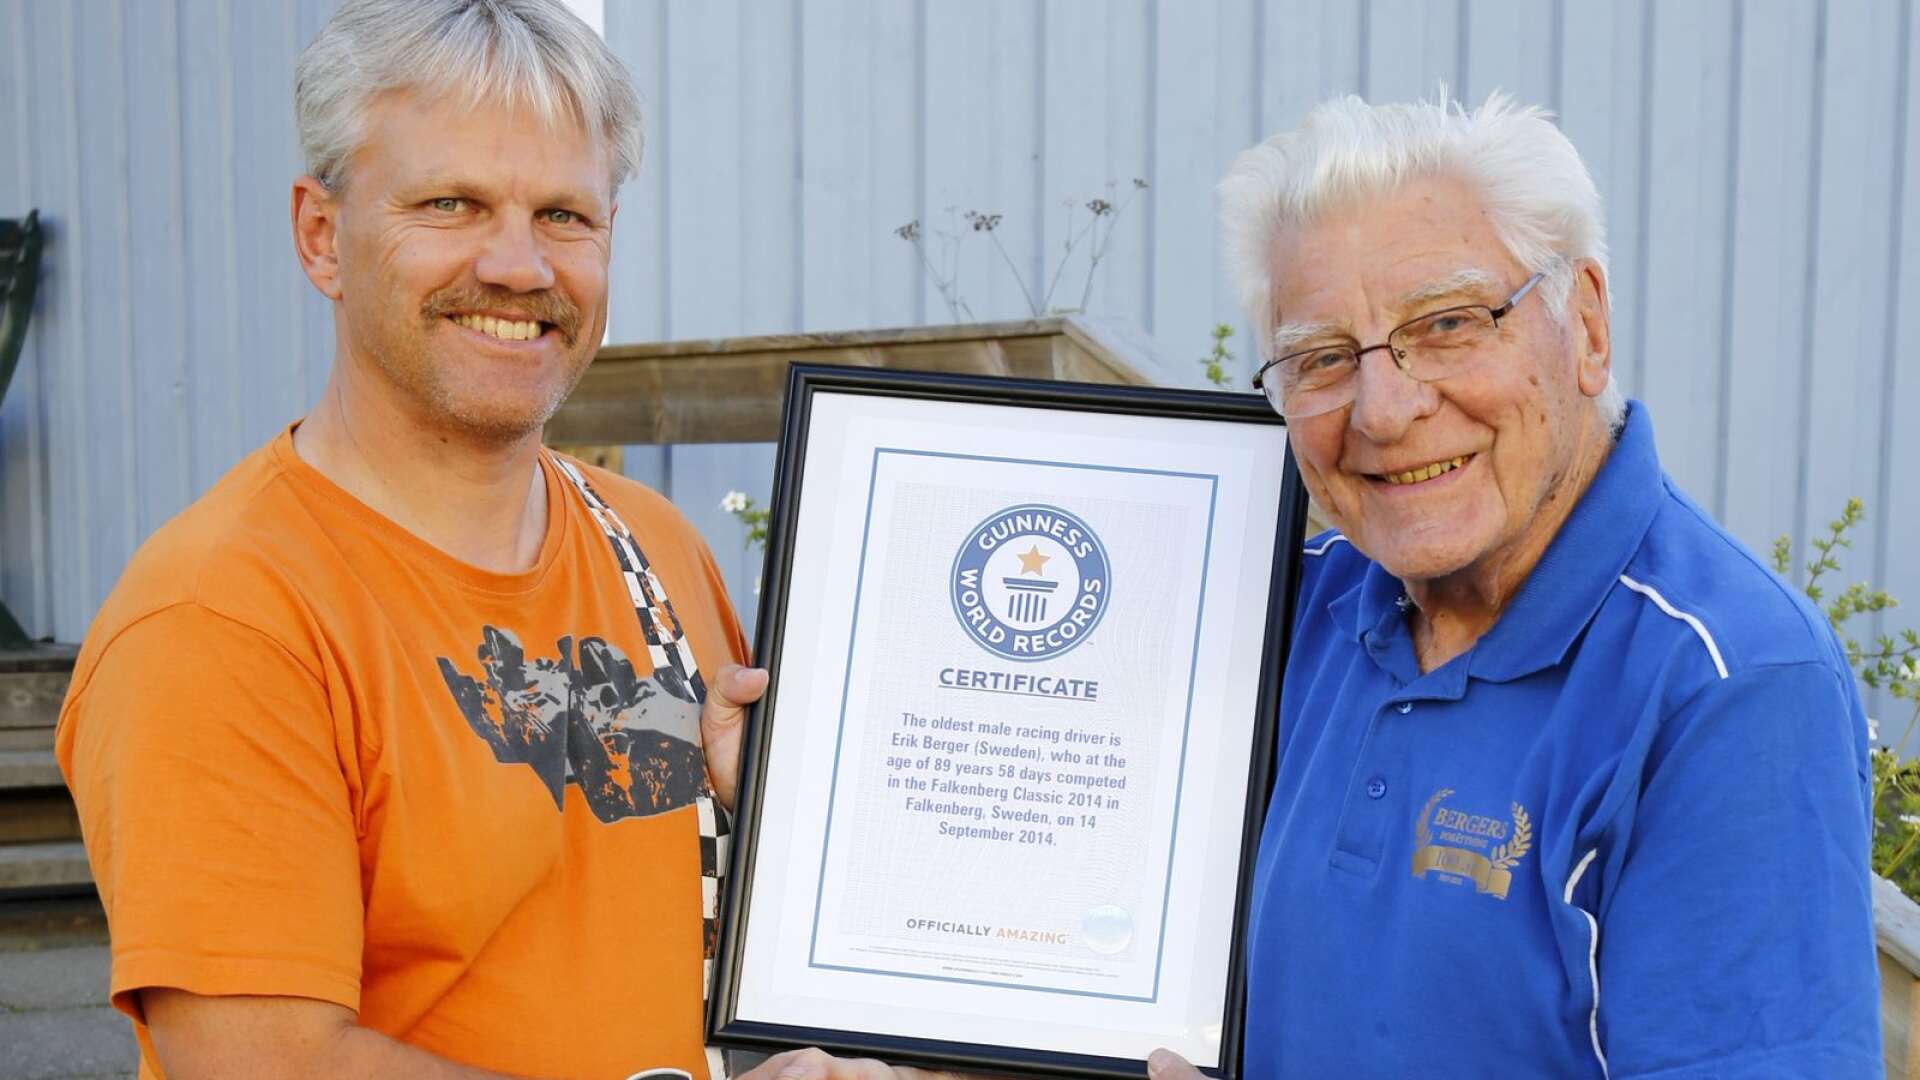 Bengt-Åce Gustavsson tillsammans med Erik Berger när denne fick ta emot diplomet från Guinness Rekordbok att han är världens äldste racerförare. Året var 2015 och Erik Berger var då 90 år.